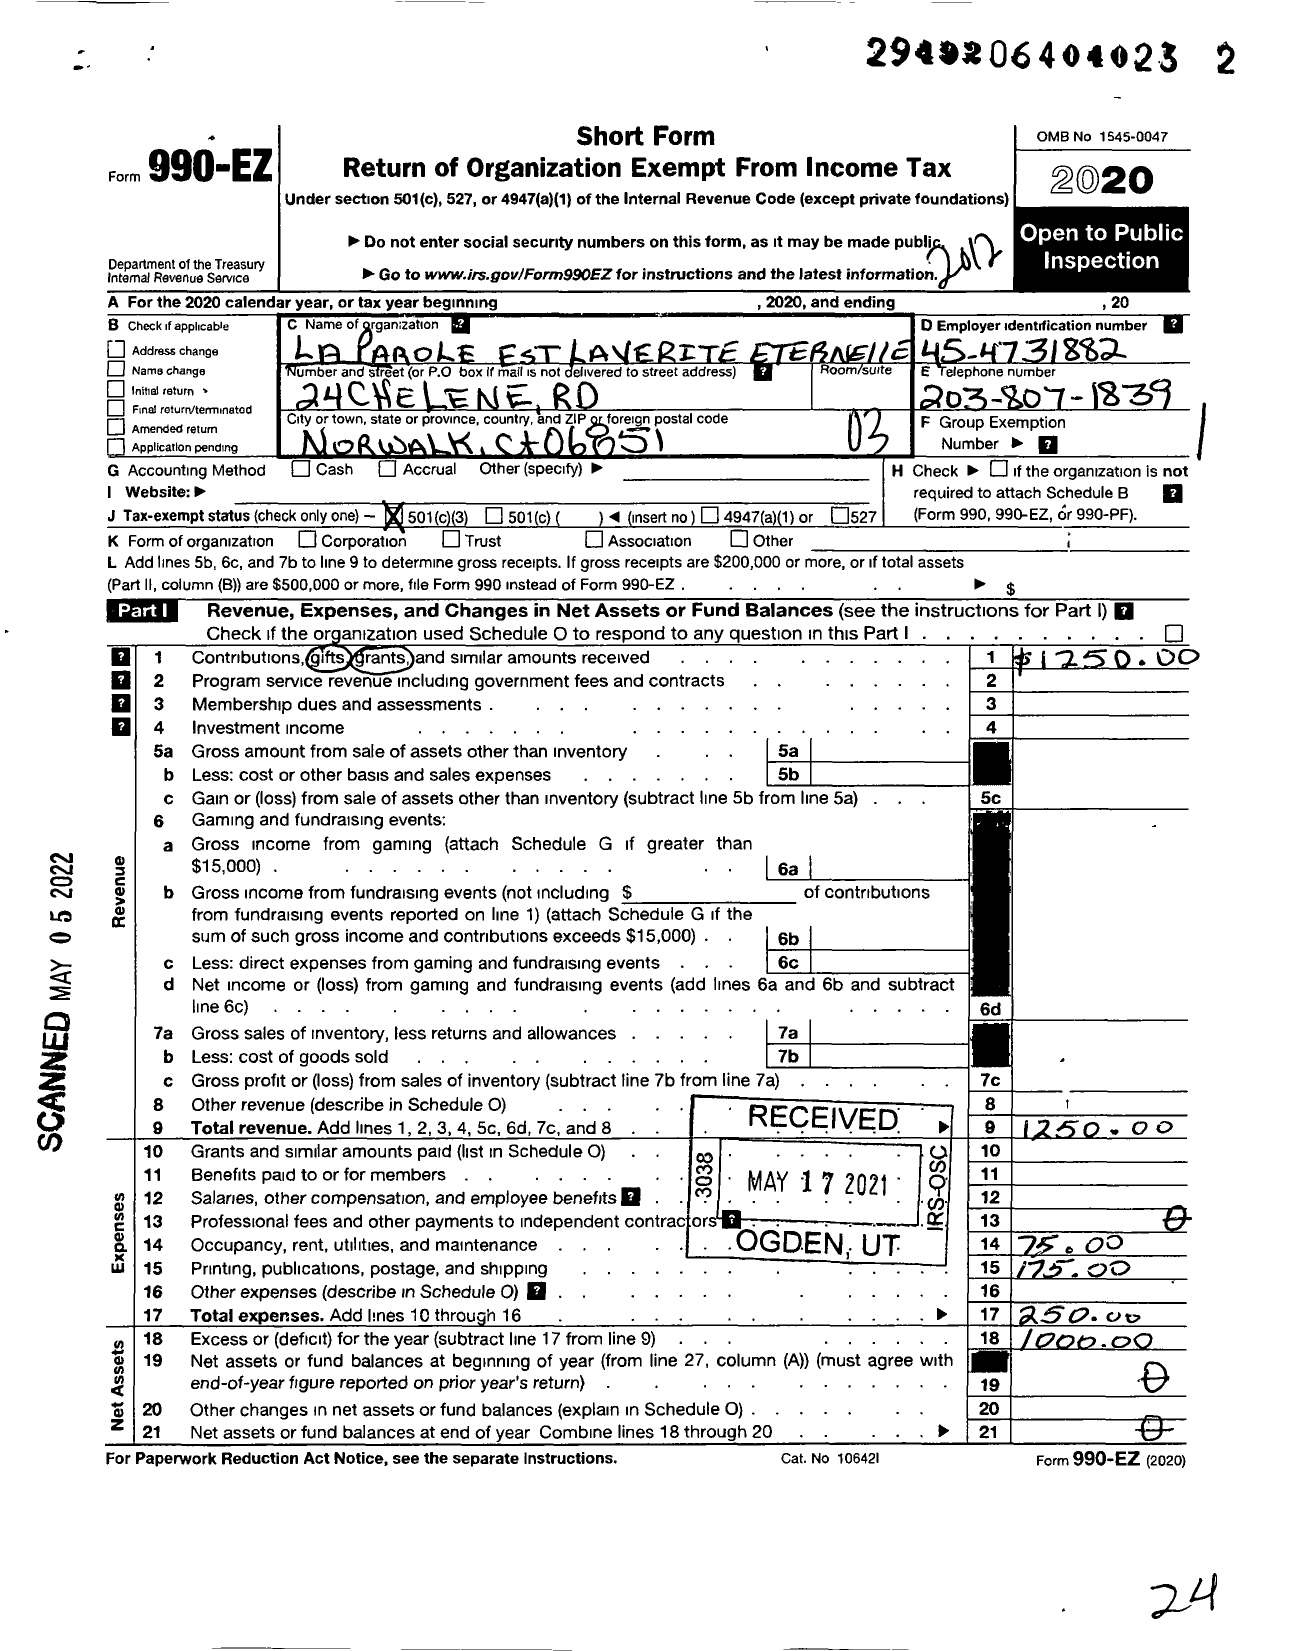 Image of first page of 2020 Form 990EZ for La Parole Et La Verite Eternelle